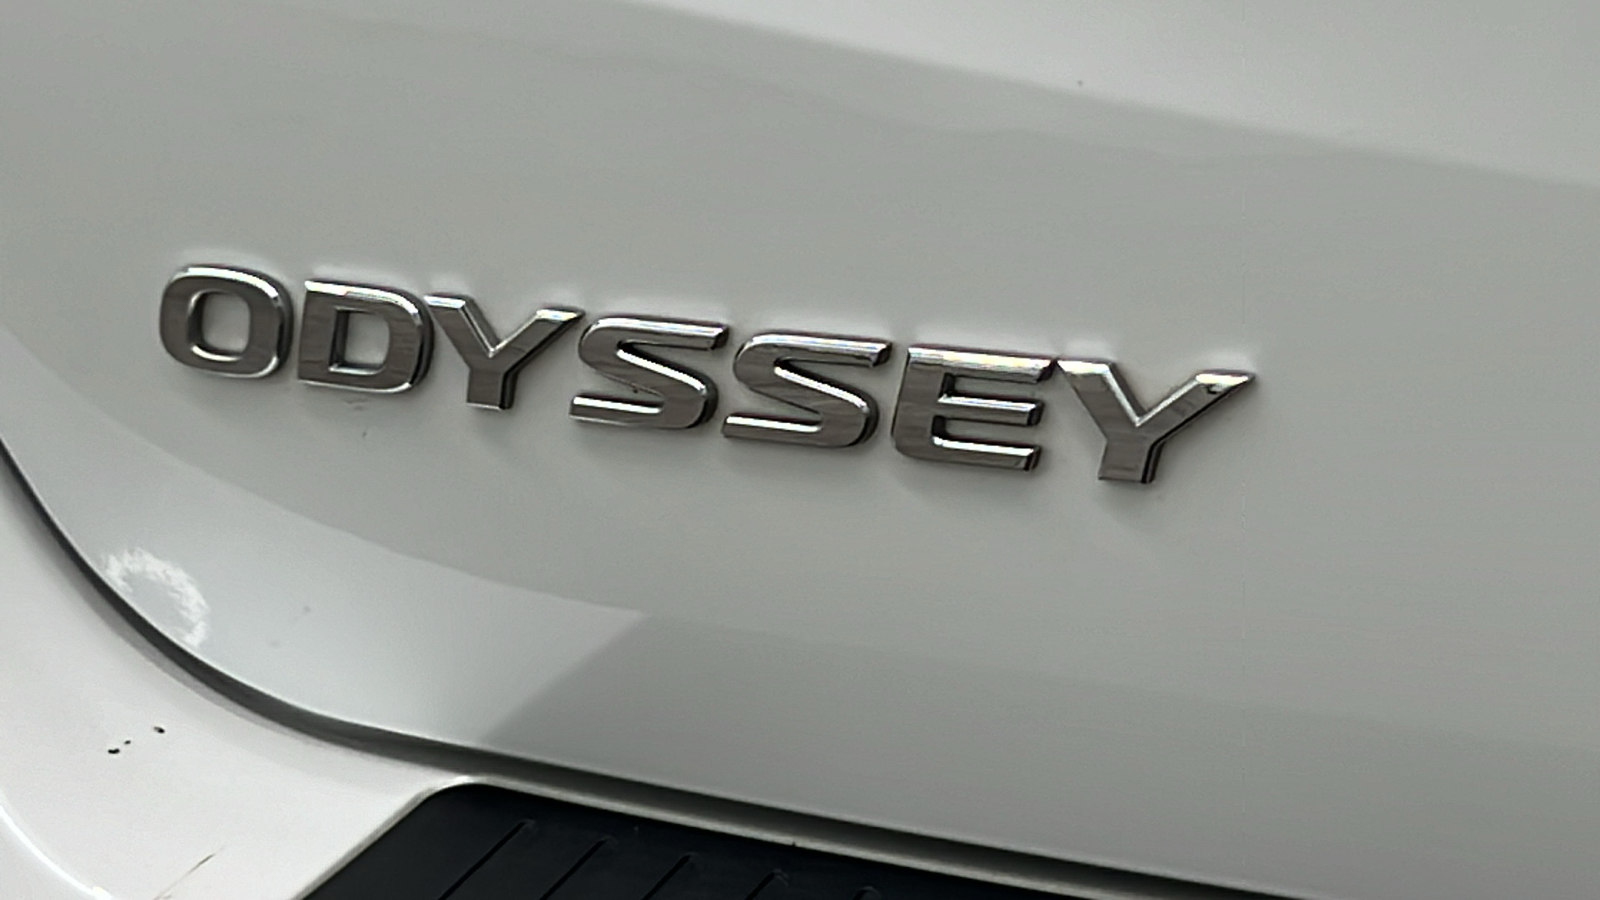 2021 Honda Odyssey EX-L 6